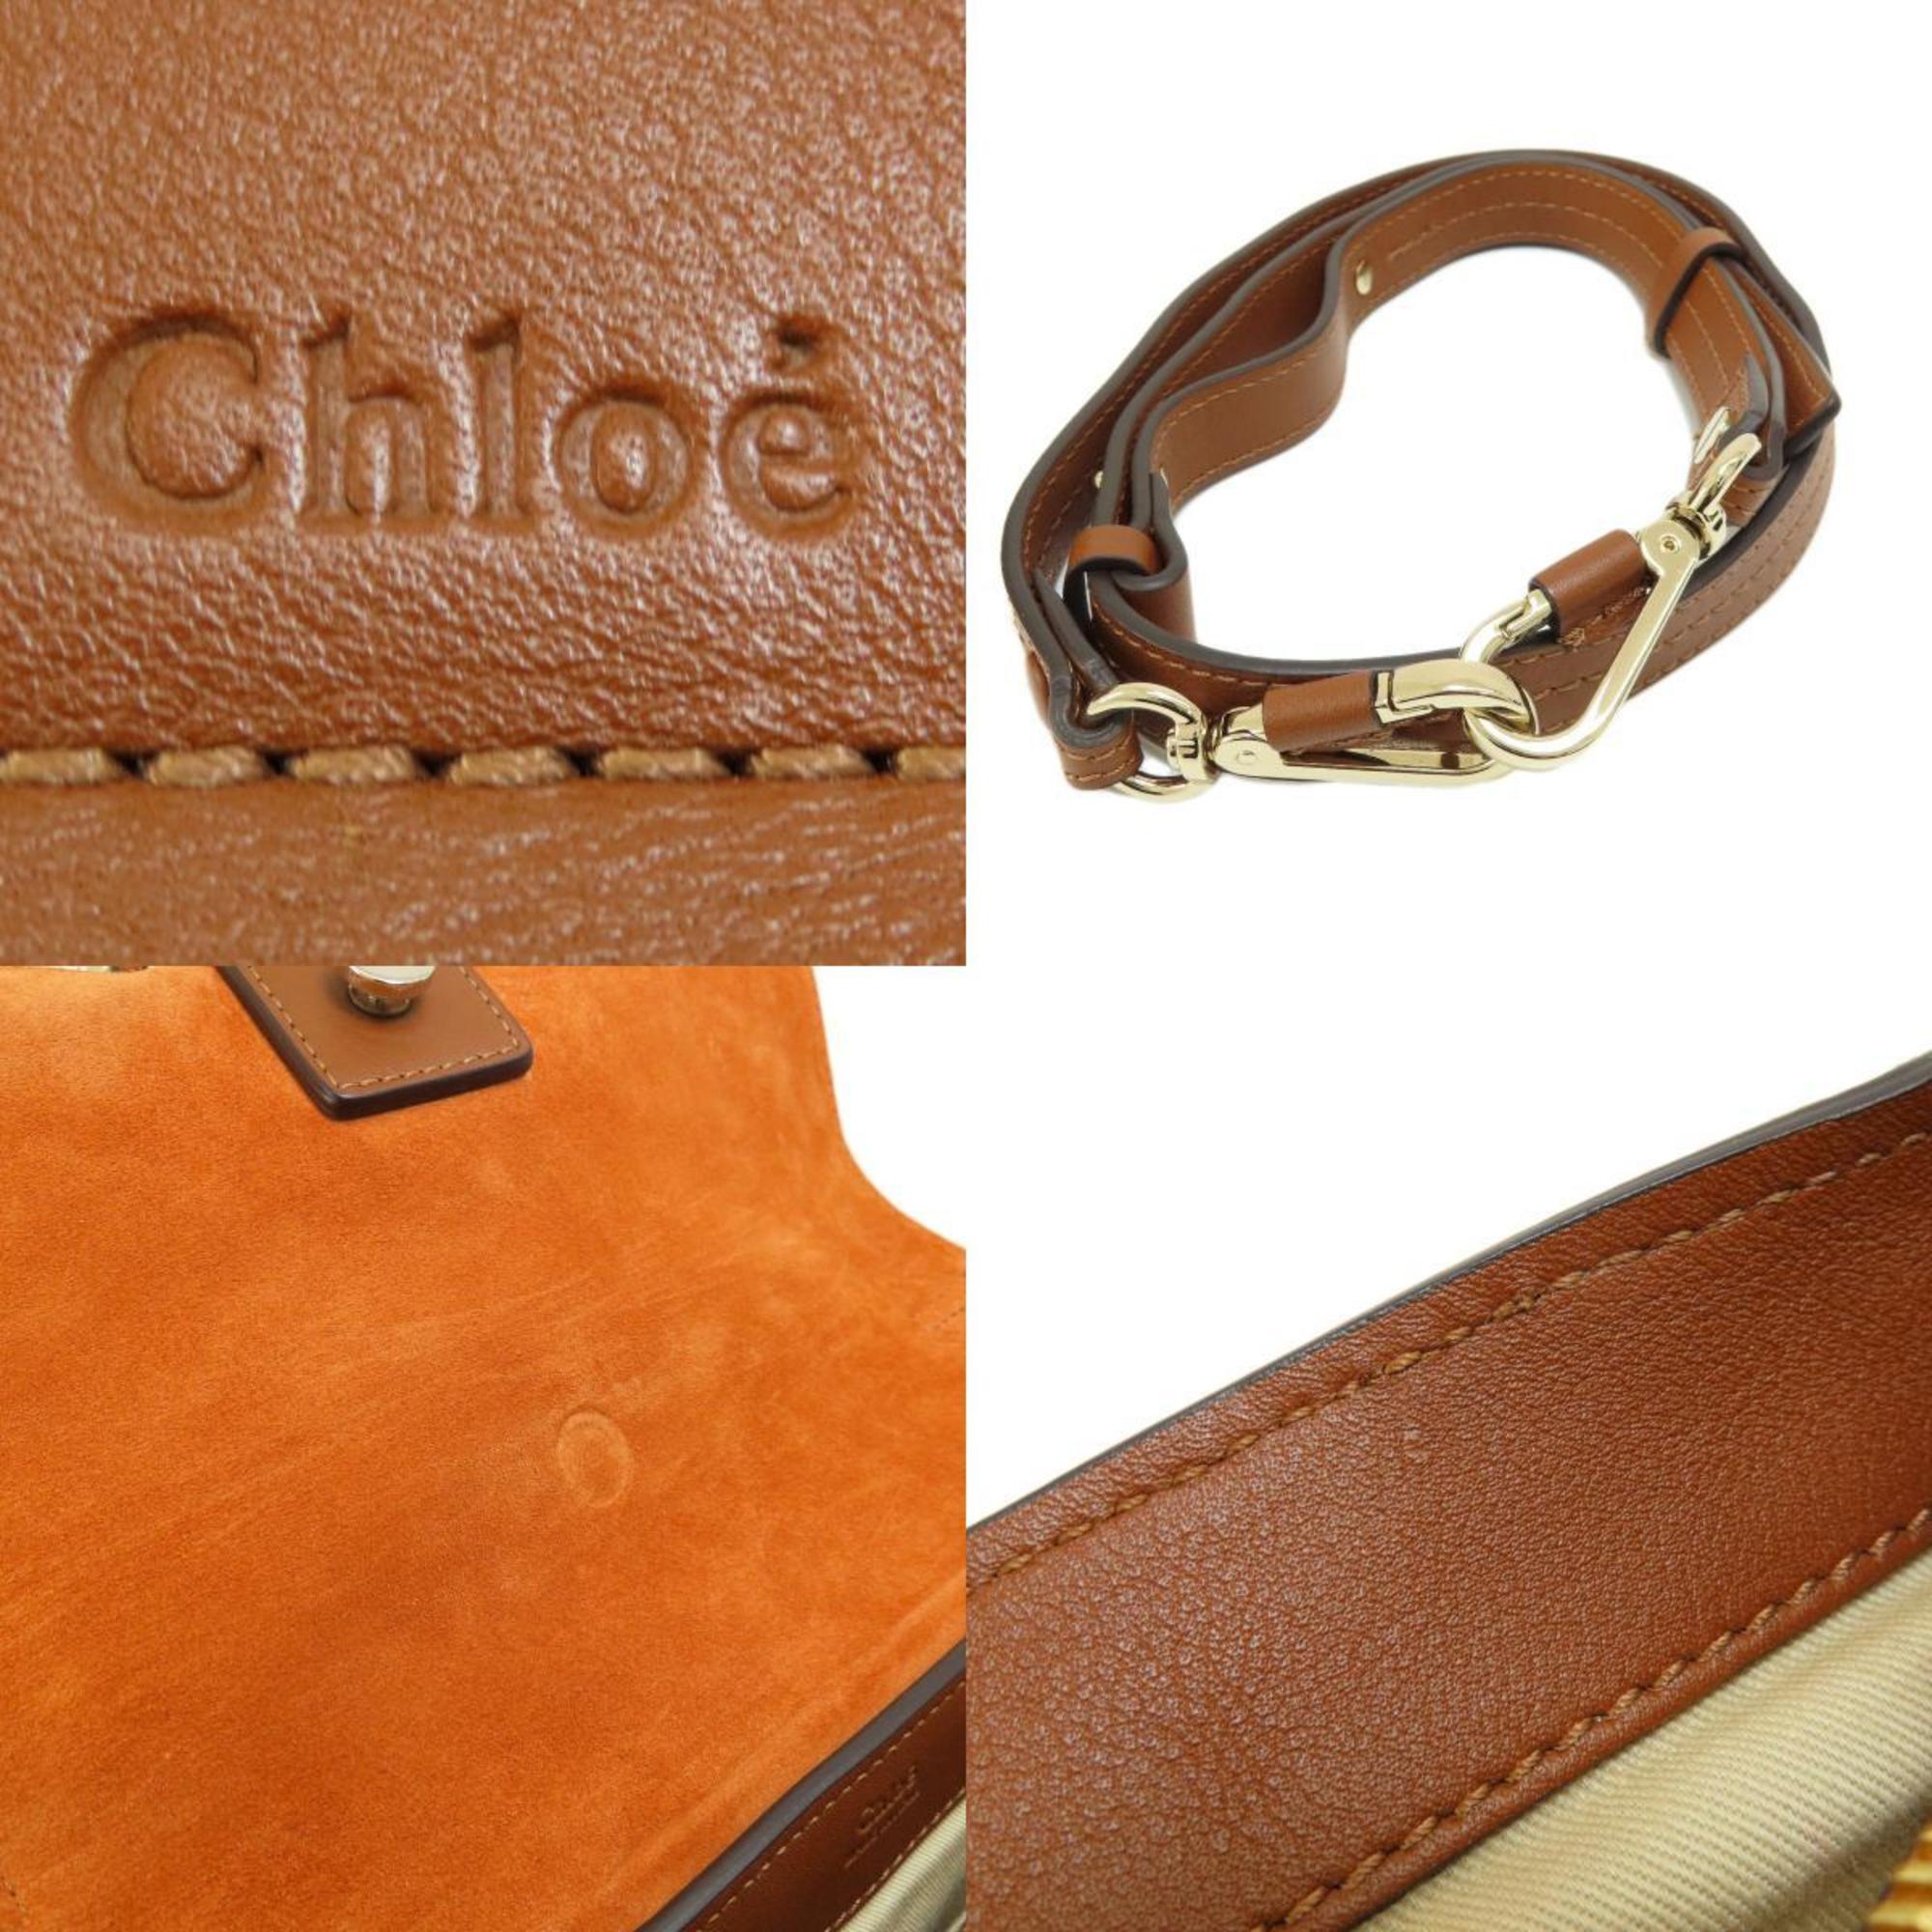 Chloé Chloe tote bag leather ladies